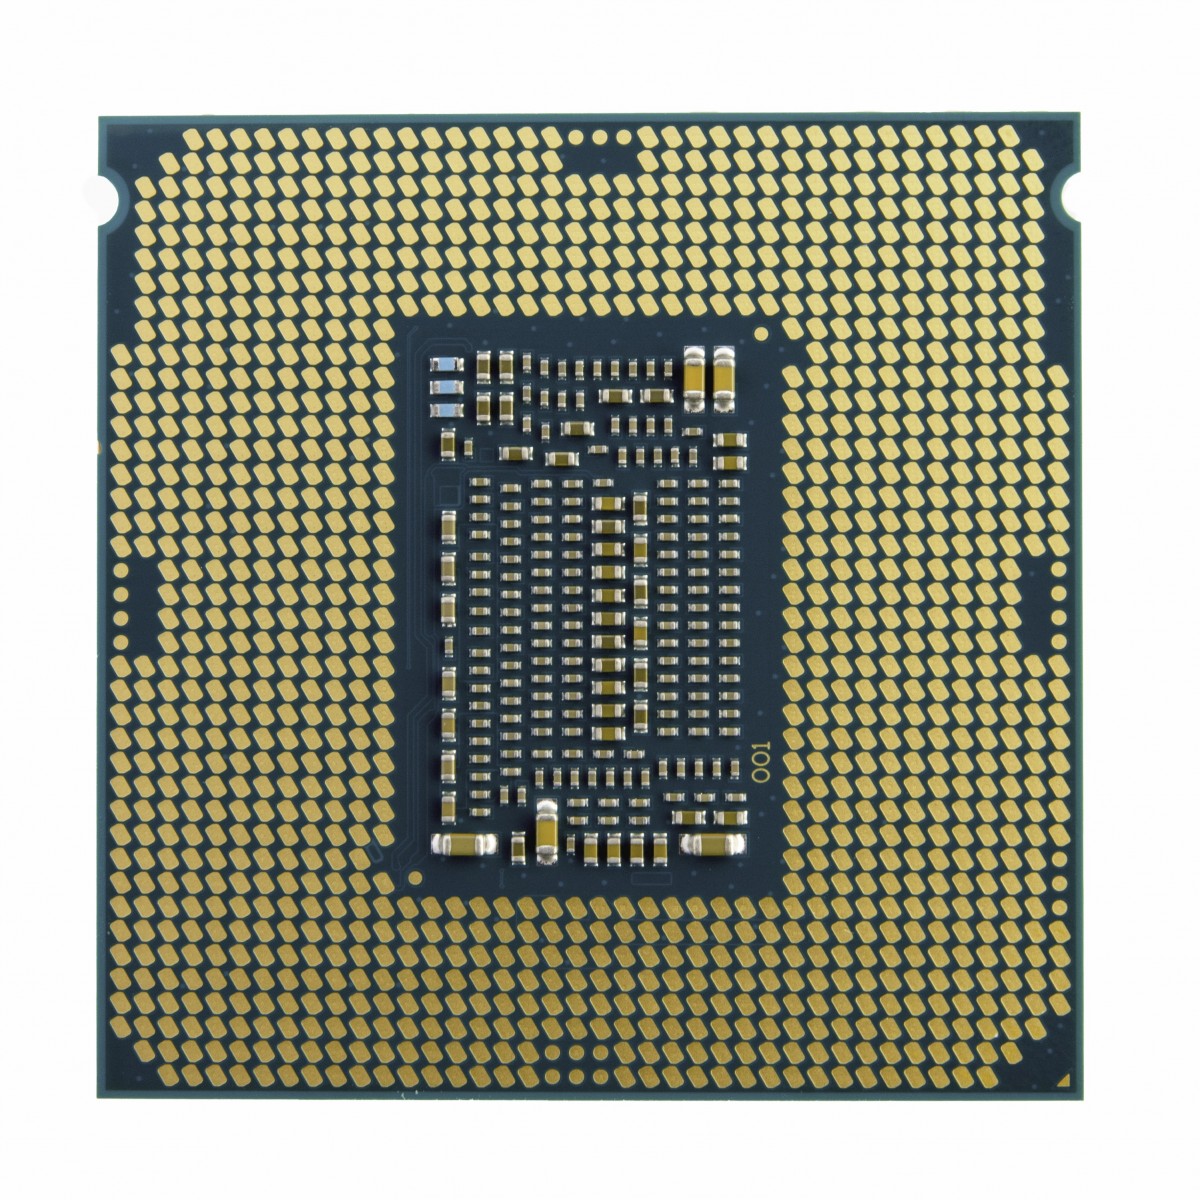 Intel Core i5 11400 Core i5 2.6 GHz - Skt 1200